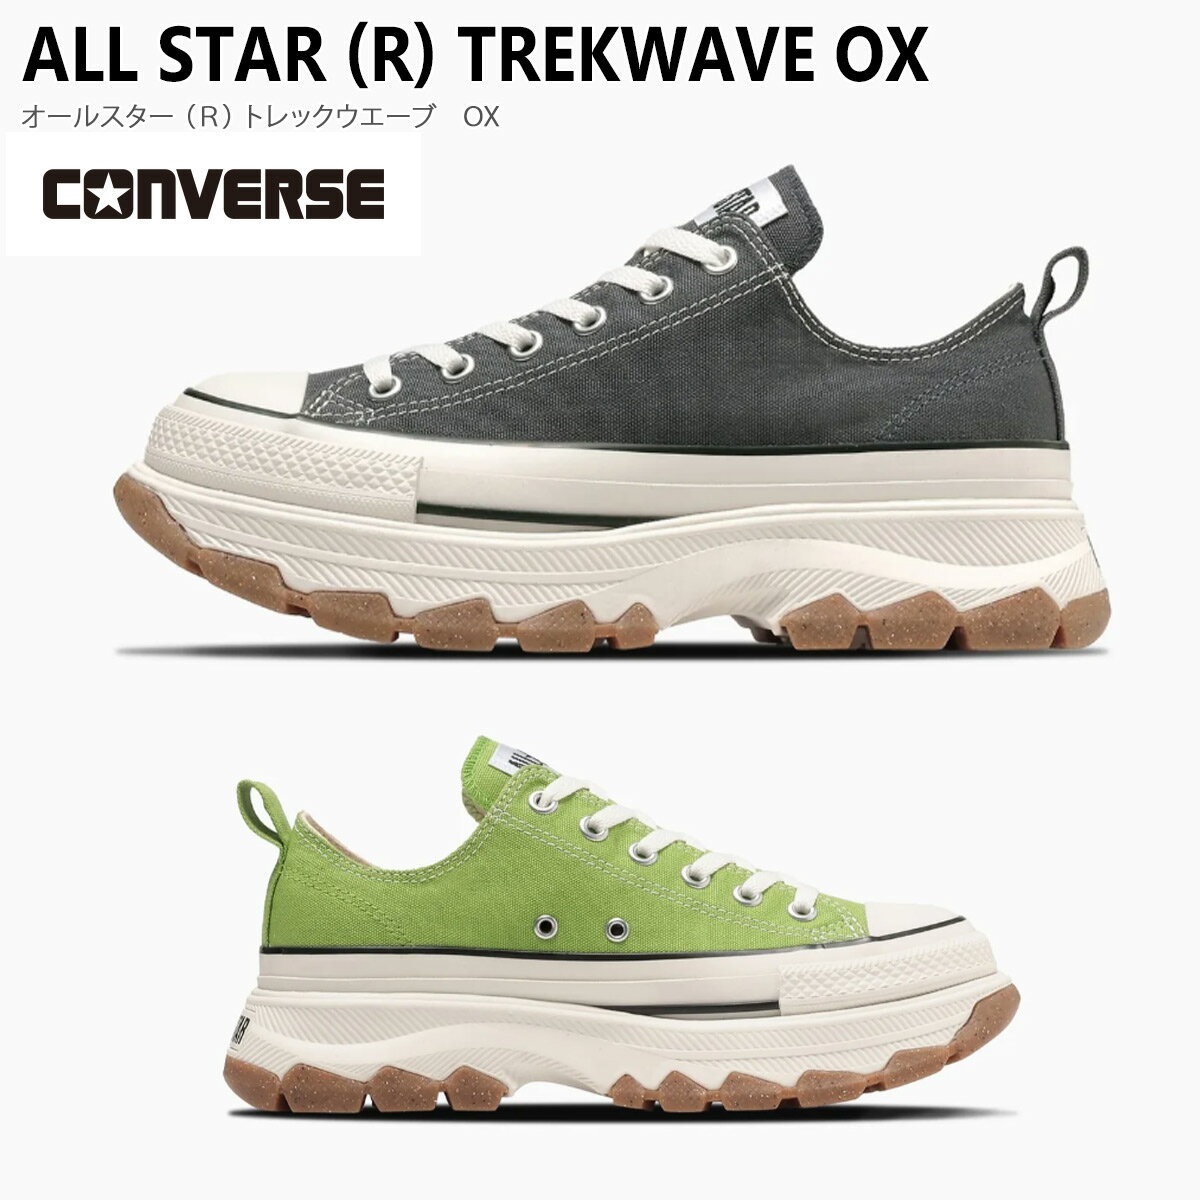 スニーカー 疲れない 痛くない CONVERSE コンバース ALL STAR (R) TREKWAVE OX 5センチヒール 歩きやすい レディース…